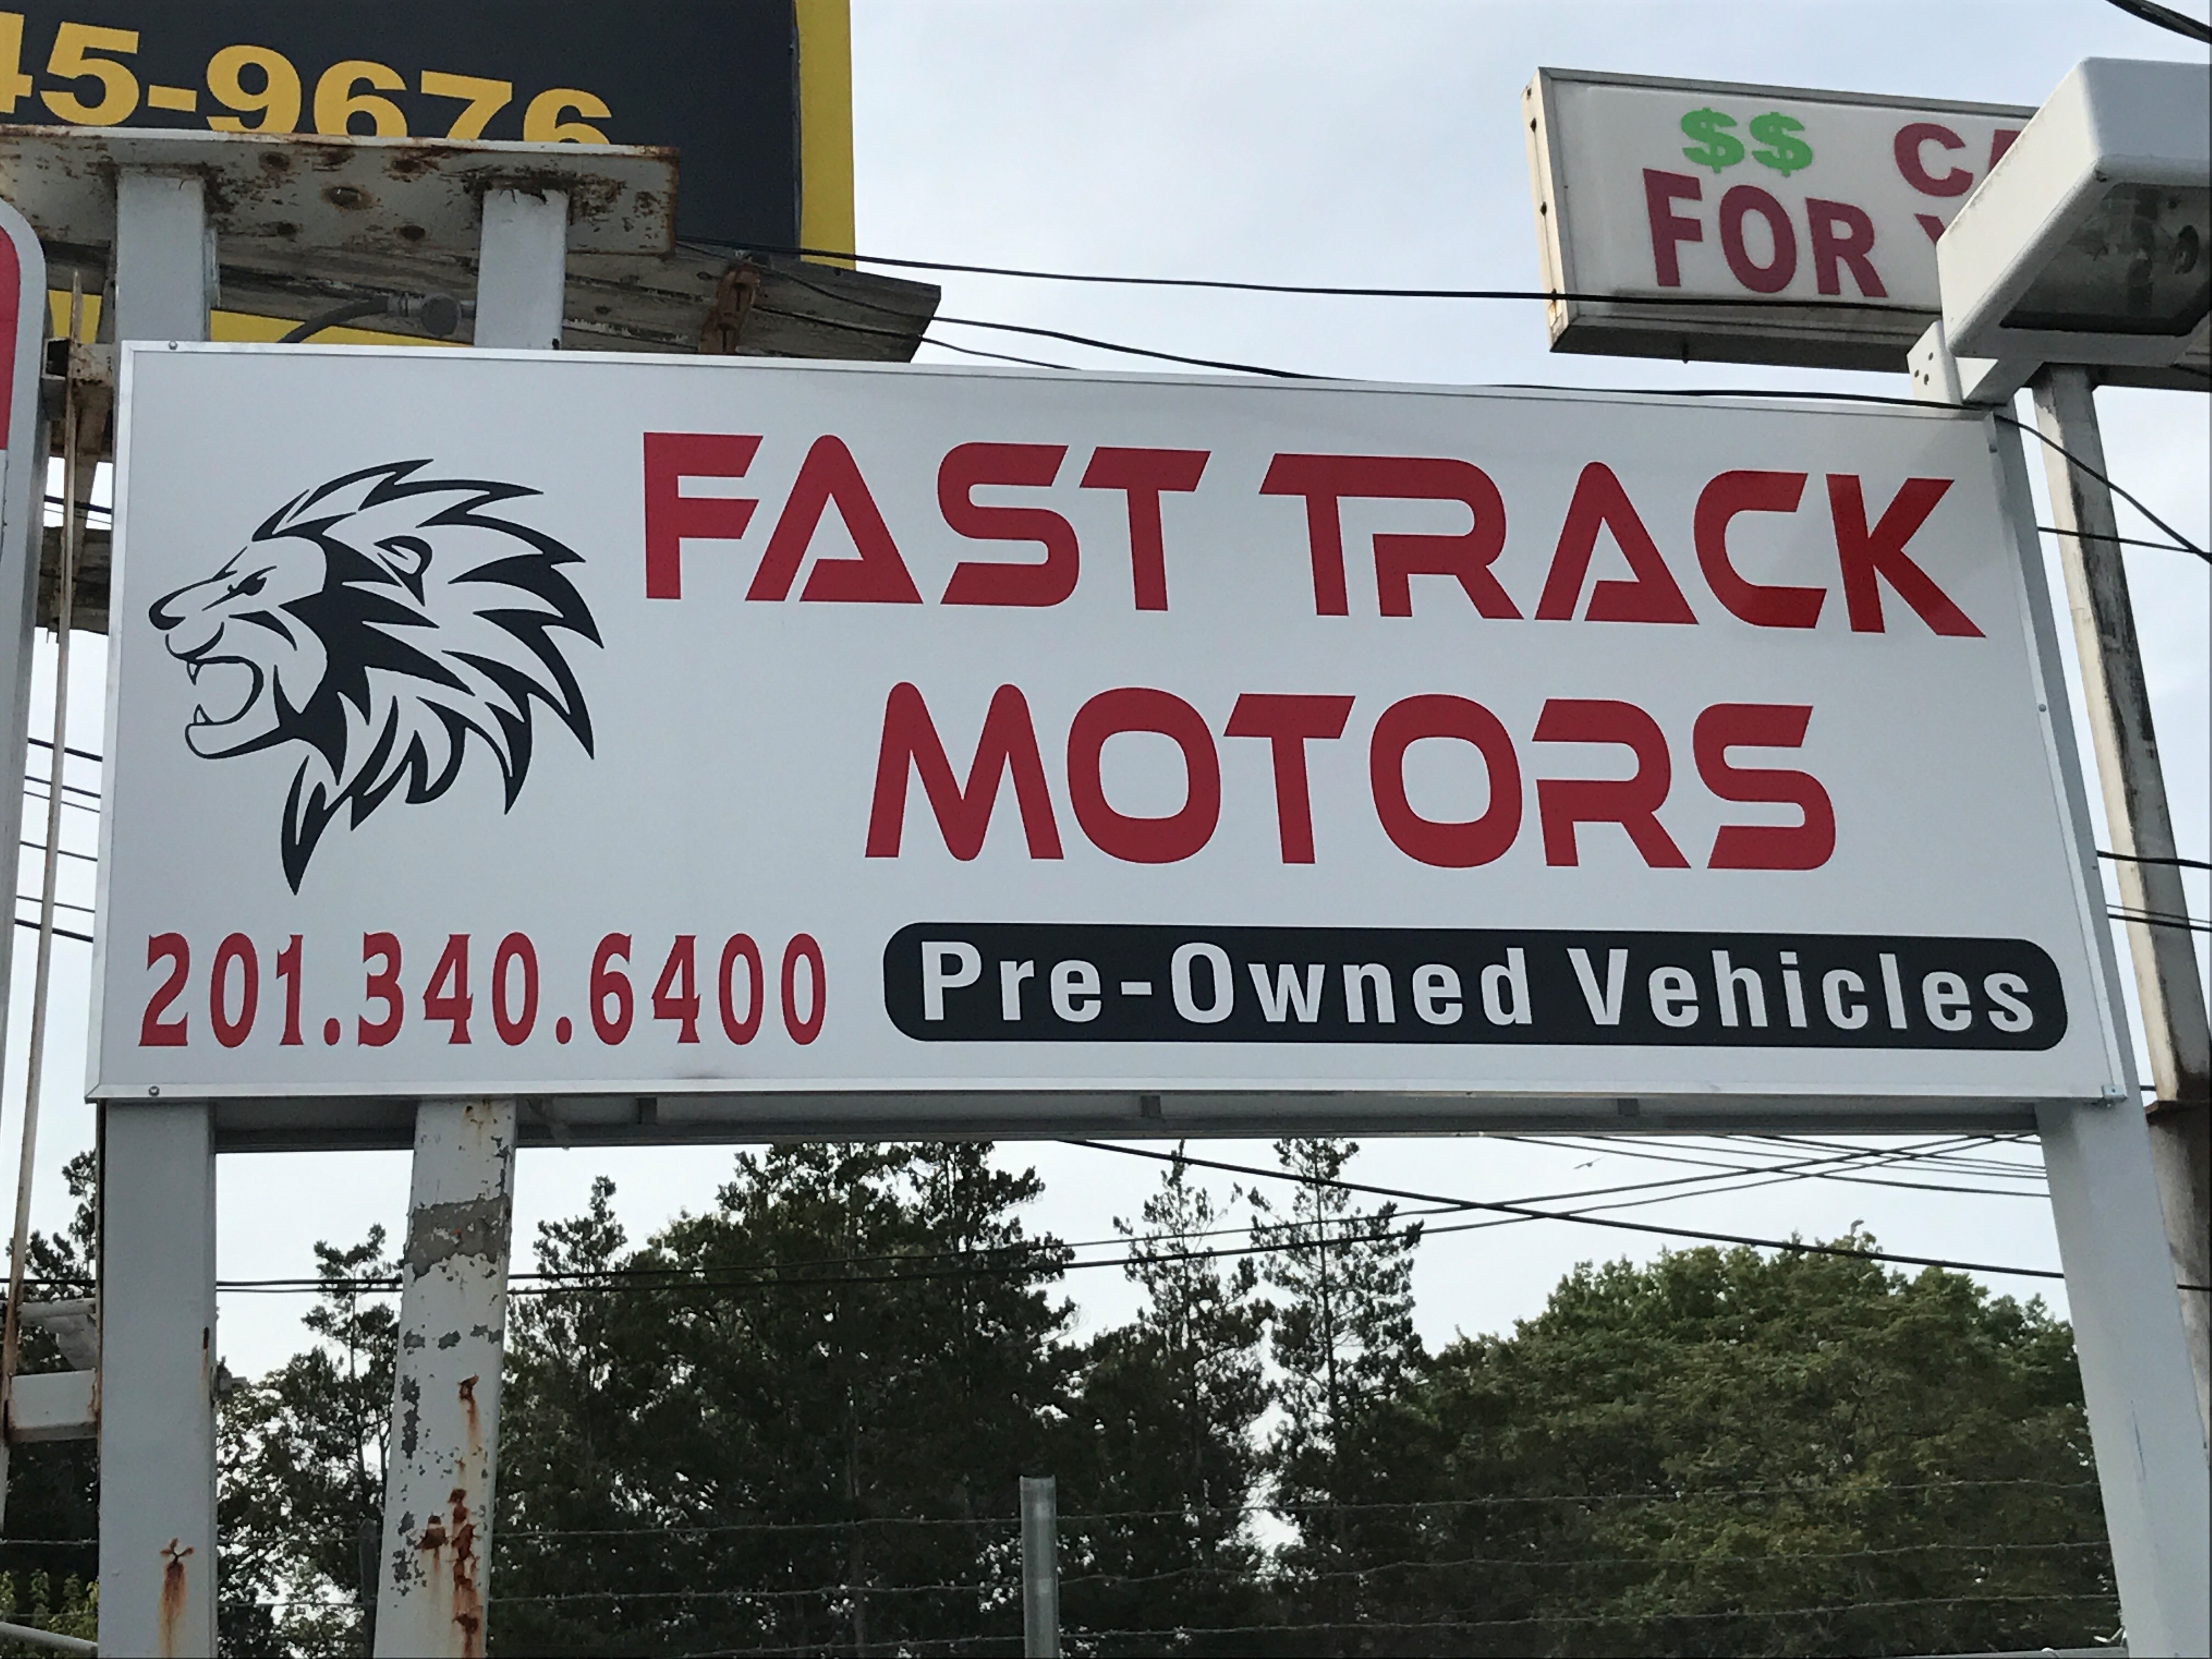 Fast Track Auto